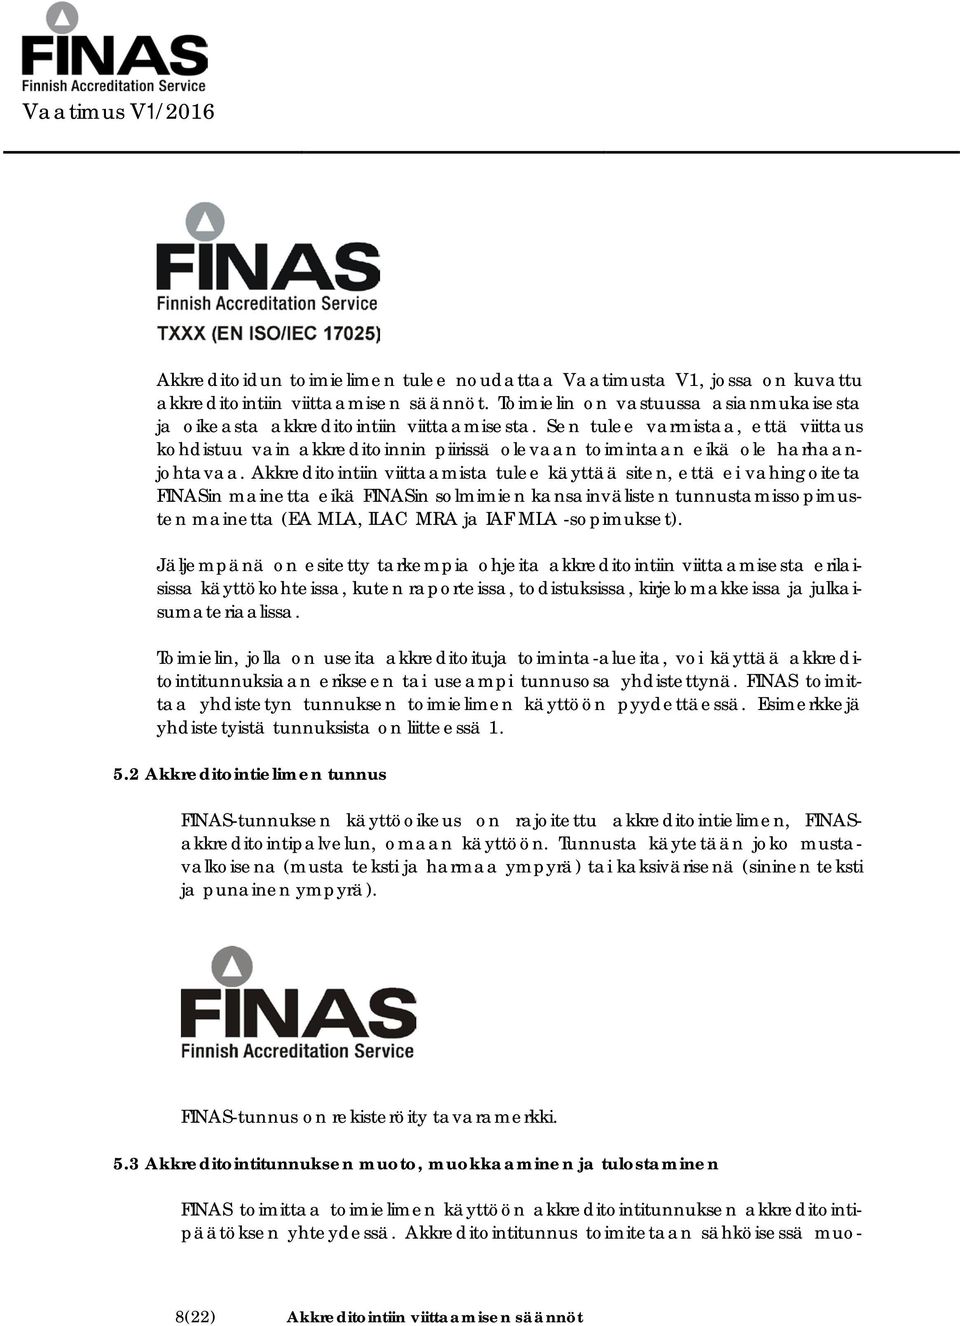 Akkreditointiin viittaamista tulee käyttää siten, että ei vahingoiteta FINASin mainetta eikä FINASin solmimien kansainvälisten tunnustamissopimusten mainetta (EA MLA, ILAC MRA ja IAF MLA -sopimukset).